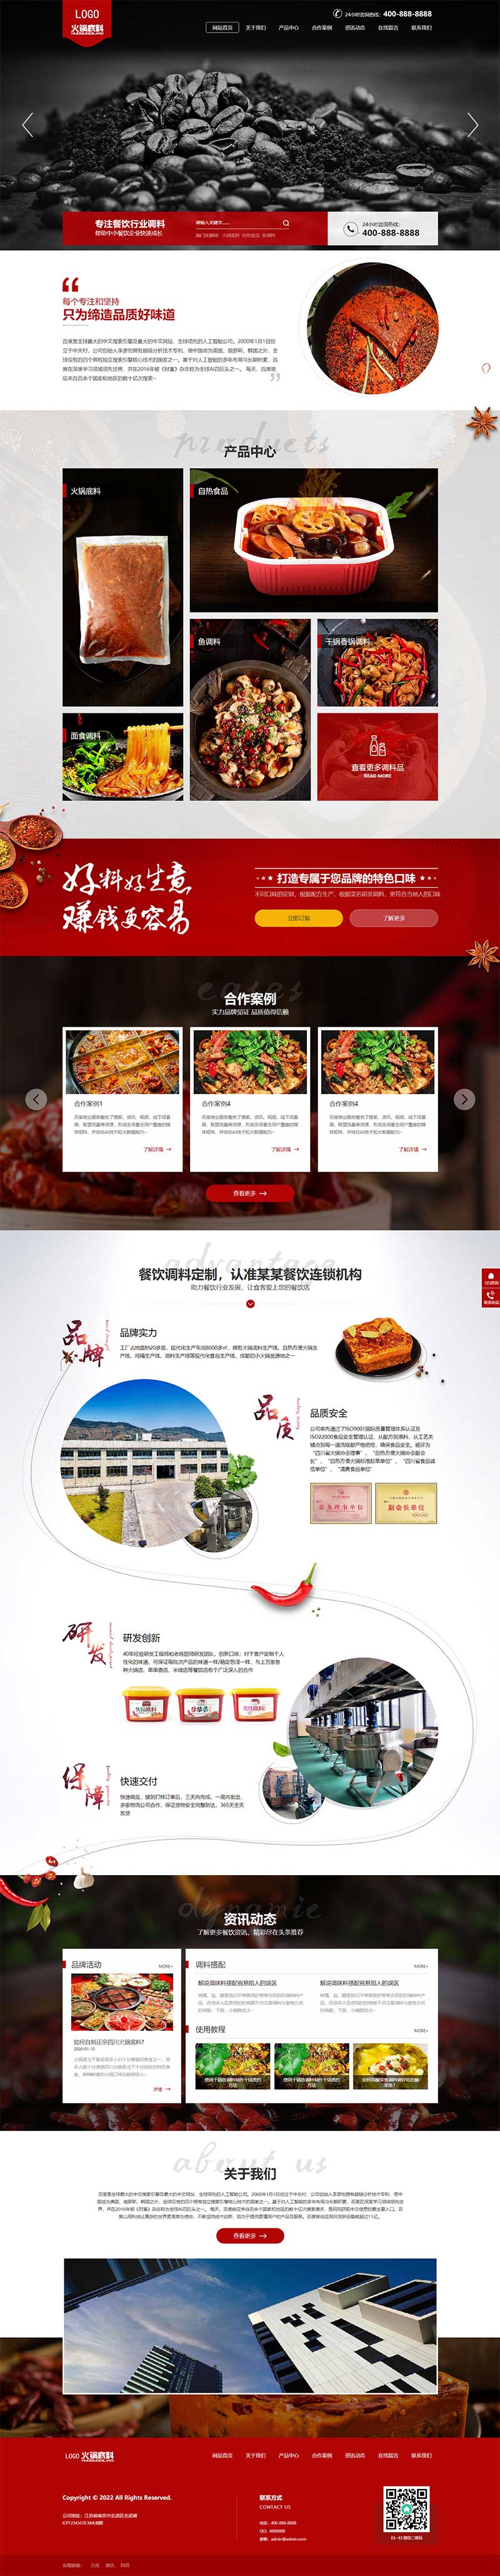 WordPress高端火锅底料食品调料餐饮美食网站模板主题演示图